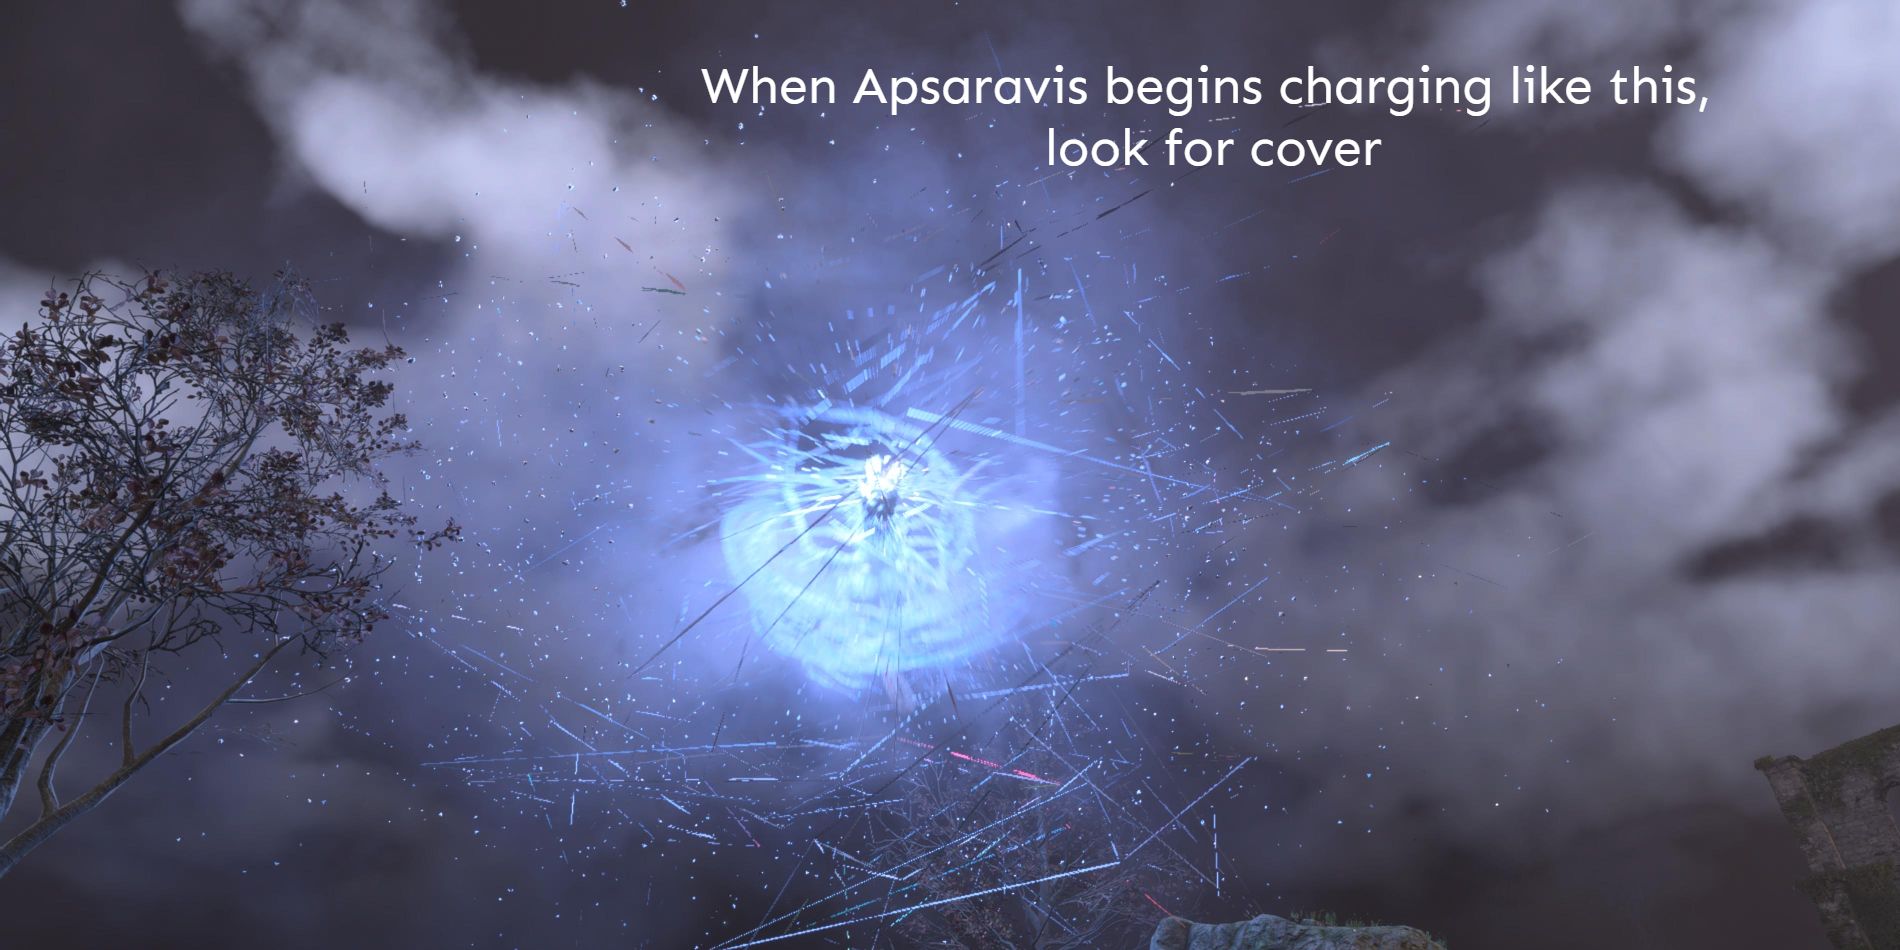 Forspoken-Apsaravis-Massive-Lightning